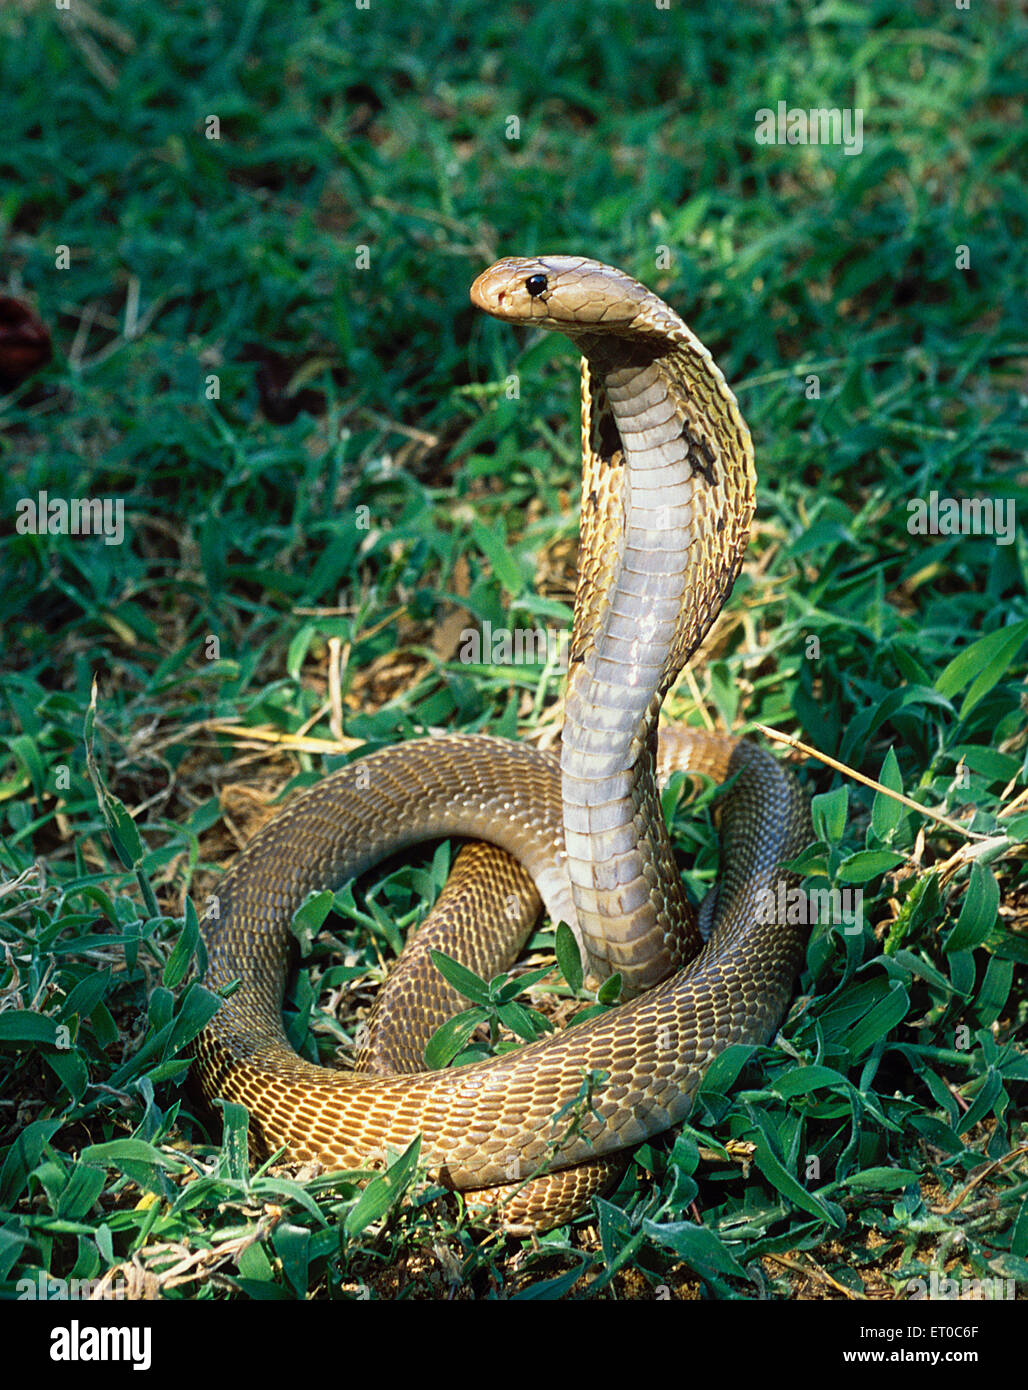 cobra snake, Indian cobra, naag, venomous snake, naja naja ; Tamil Nadu ; India, Asia Stock Photo